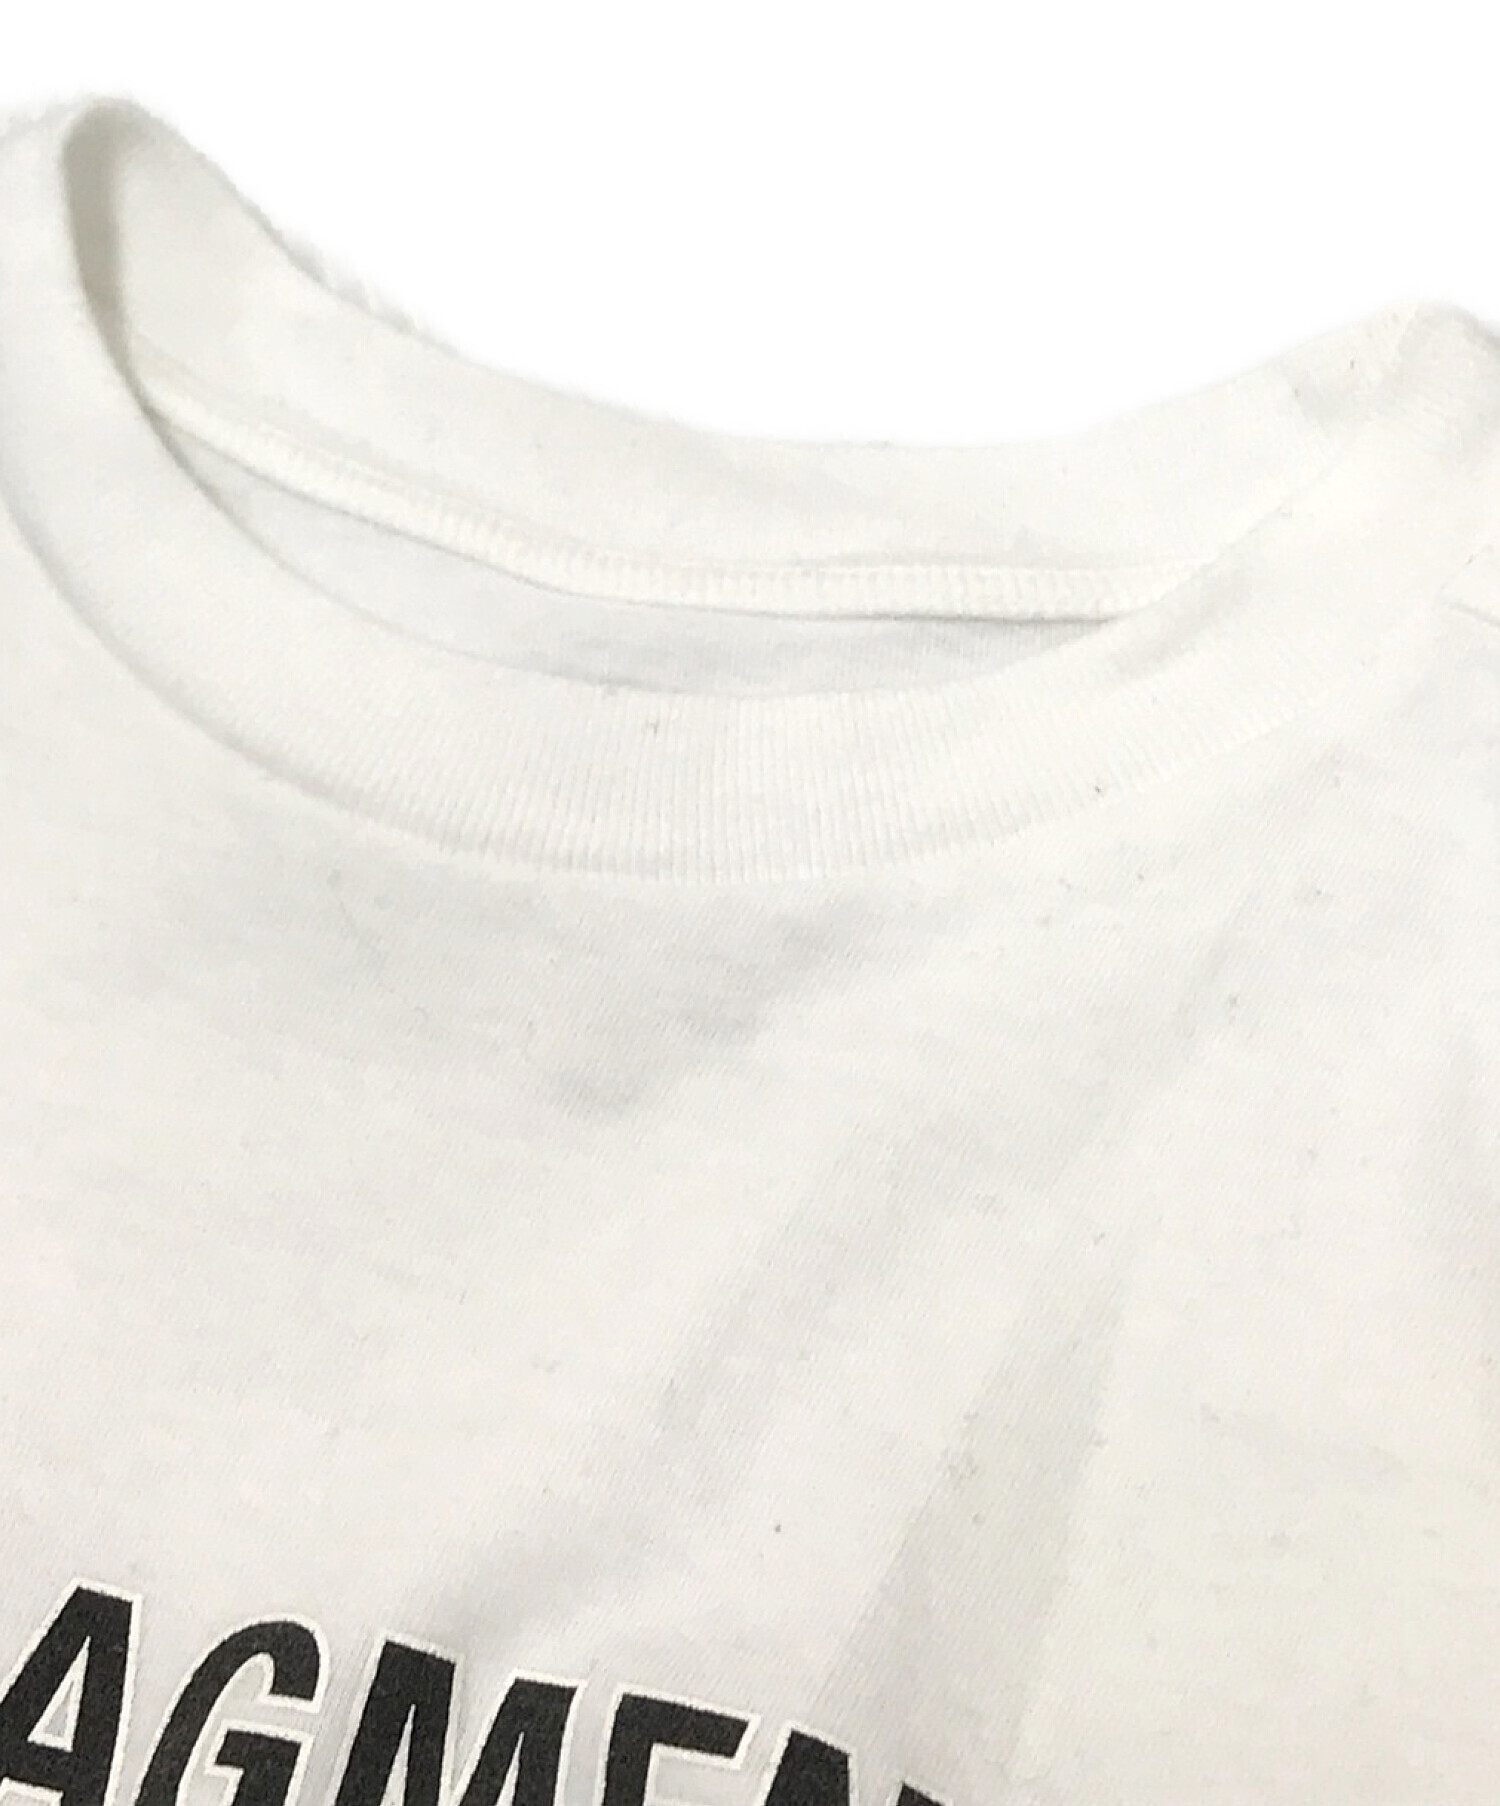 SEQUEL (シークエル) FRAGMENT DESIGN (フラグメント デザイン) ロゴプリントTシャツ ホワイト サイズ:M